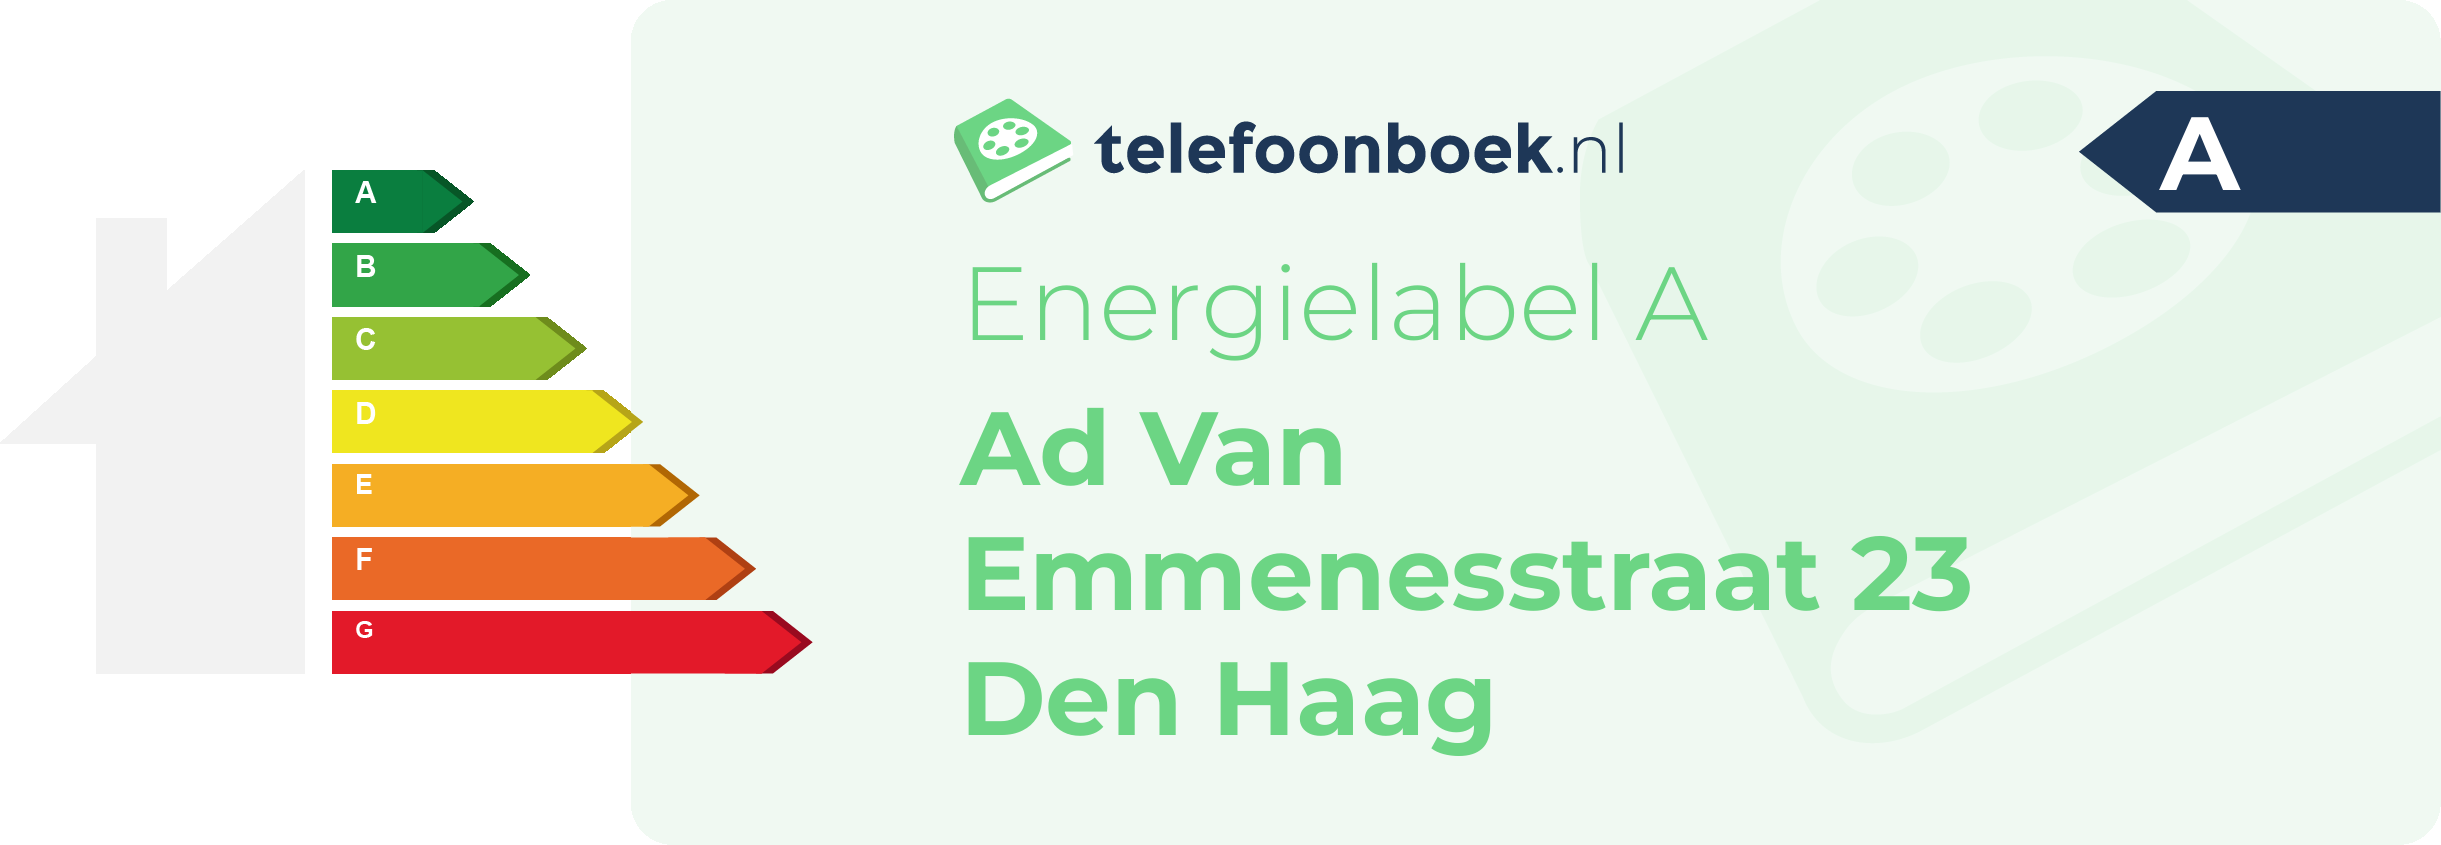 Energielabel Ad Van Emmenesstraat 23 Den Haag